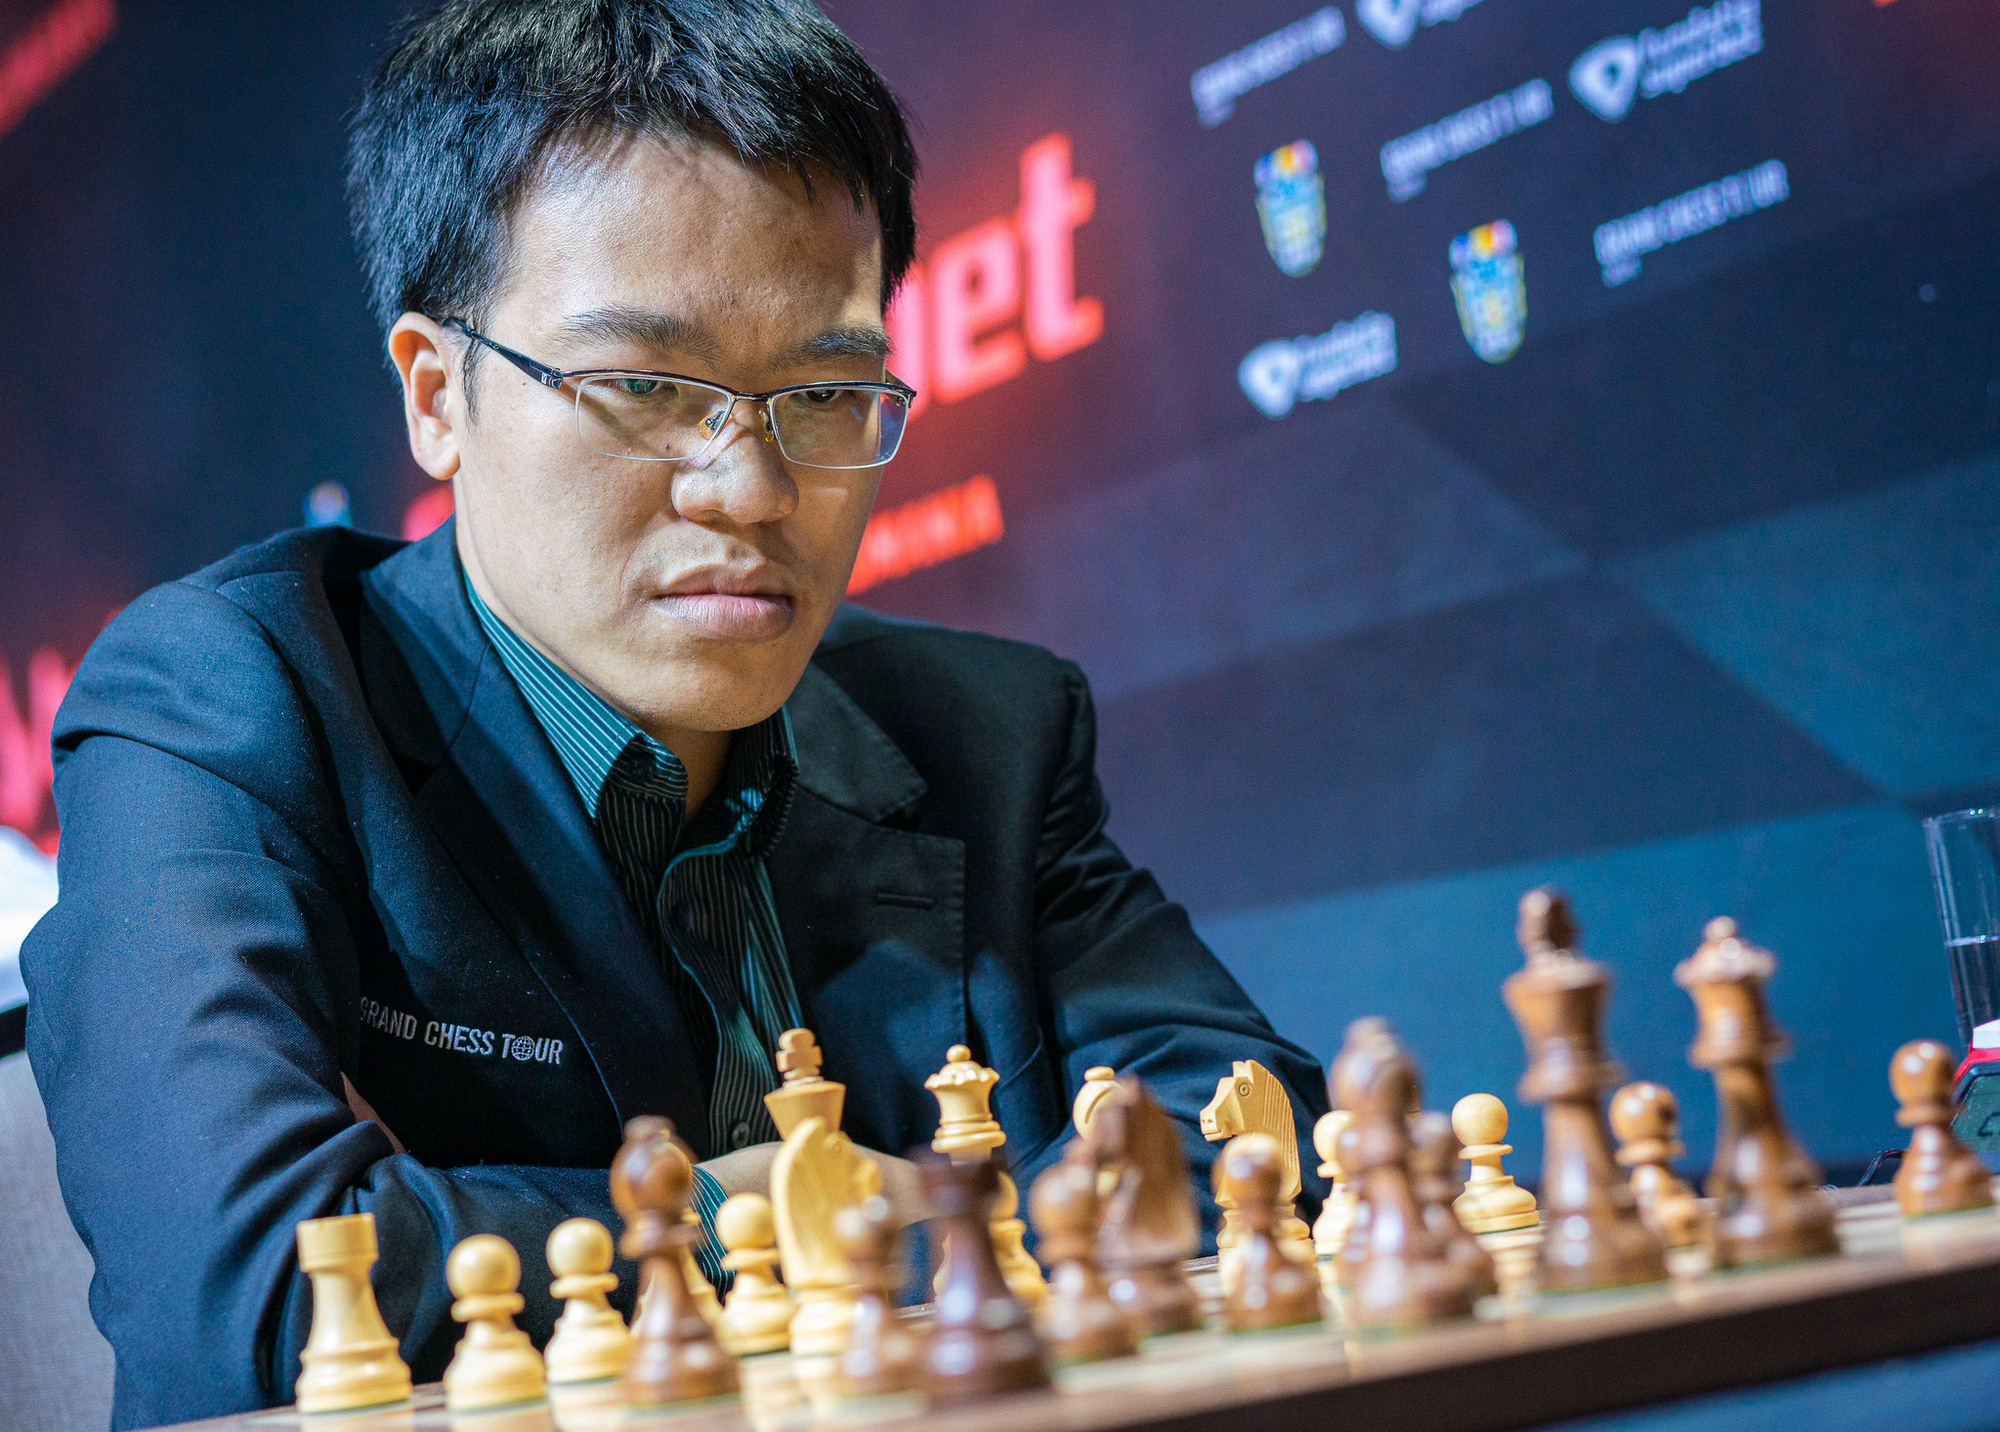 Với chiến thắng của Lê Quang Liêm tại giải cờ vua danh tiếng Aeroflot Open vào năm 2021, anh đã chứng minh được vị thế của mình trong hàng ngũ những tay cờ vua hàng đầu thế giới. Hãy xem các hình ảnh của Lê Quang Liêm chiến thắng trong các giải đấu cờ vua toàn cầu và được vinh danh trong các cuộc thi danh tiếng khác.